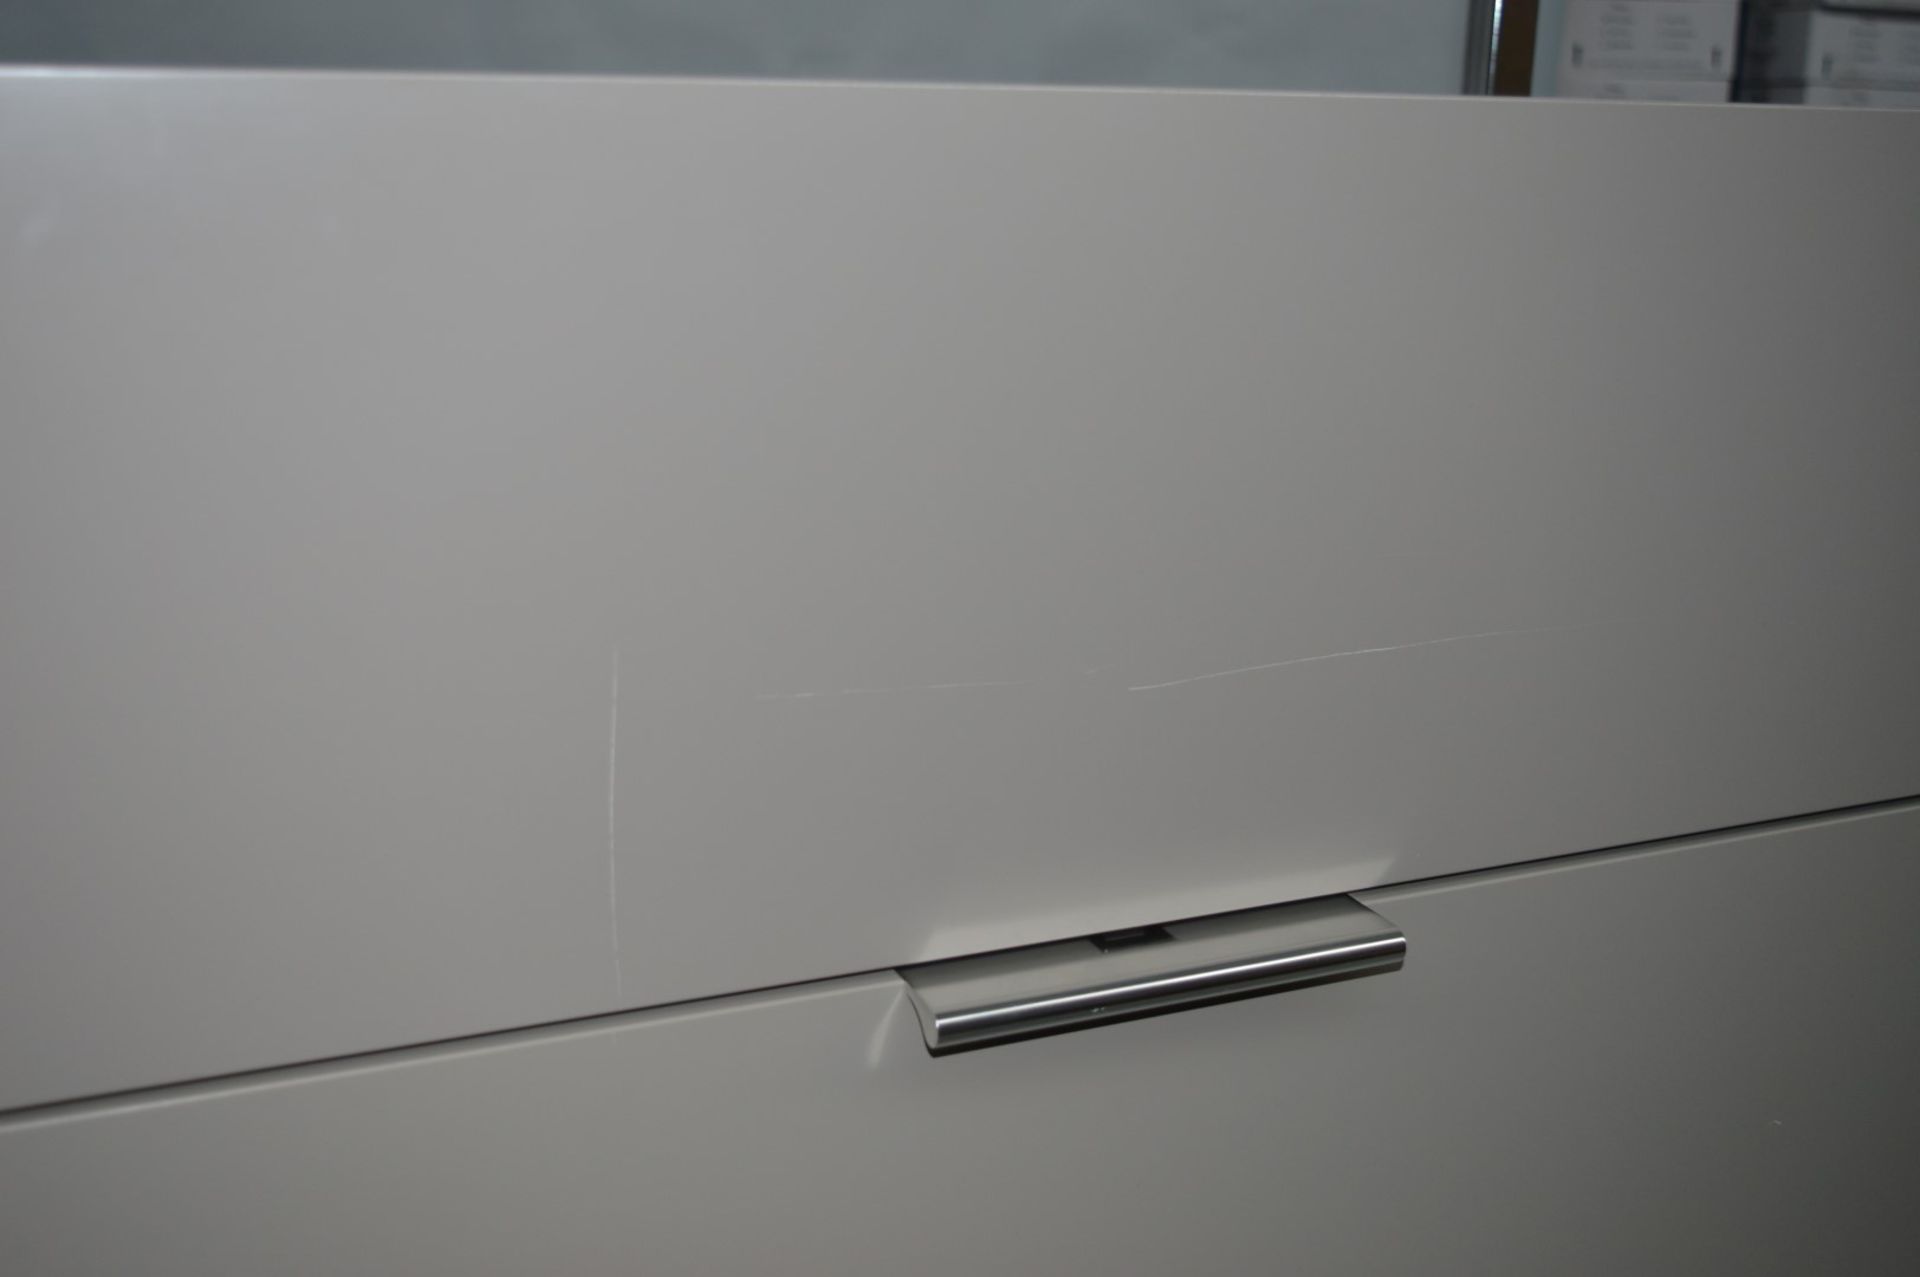 1 x Ligne Roset Compact Work Station Desk - Dimesions: H190 x D45 x W90cm - Secretaire Argile - Image 14 of 16